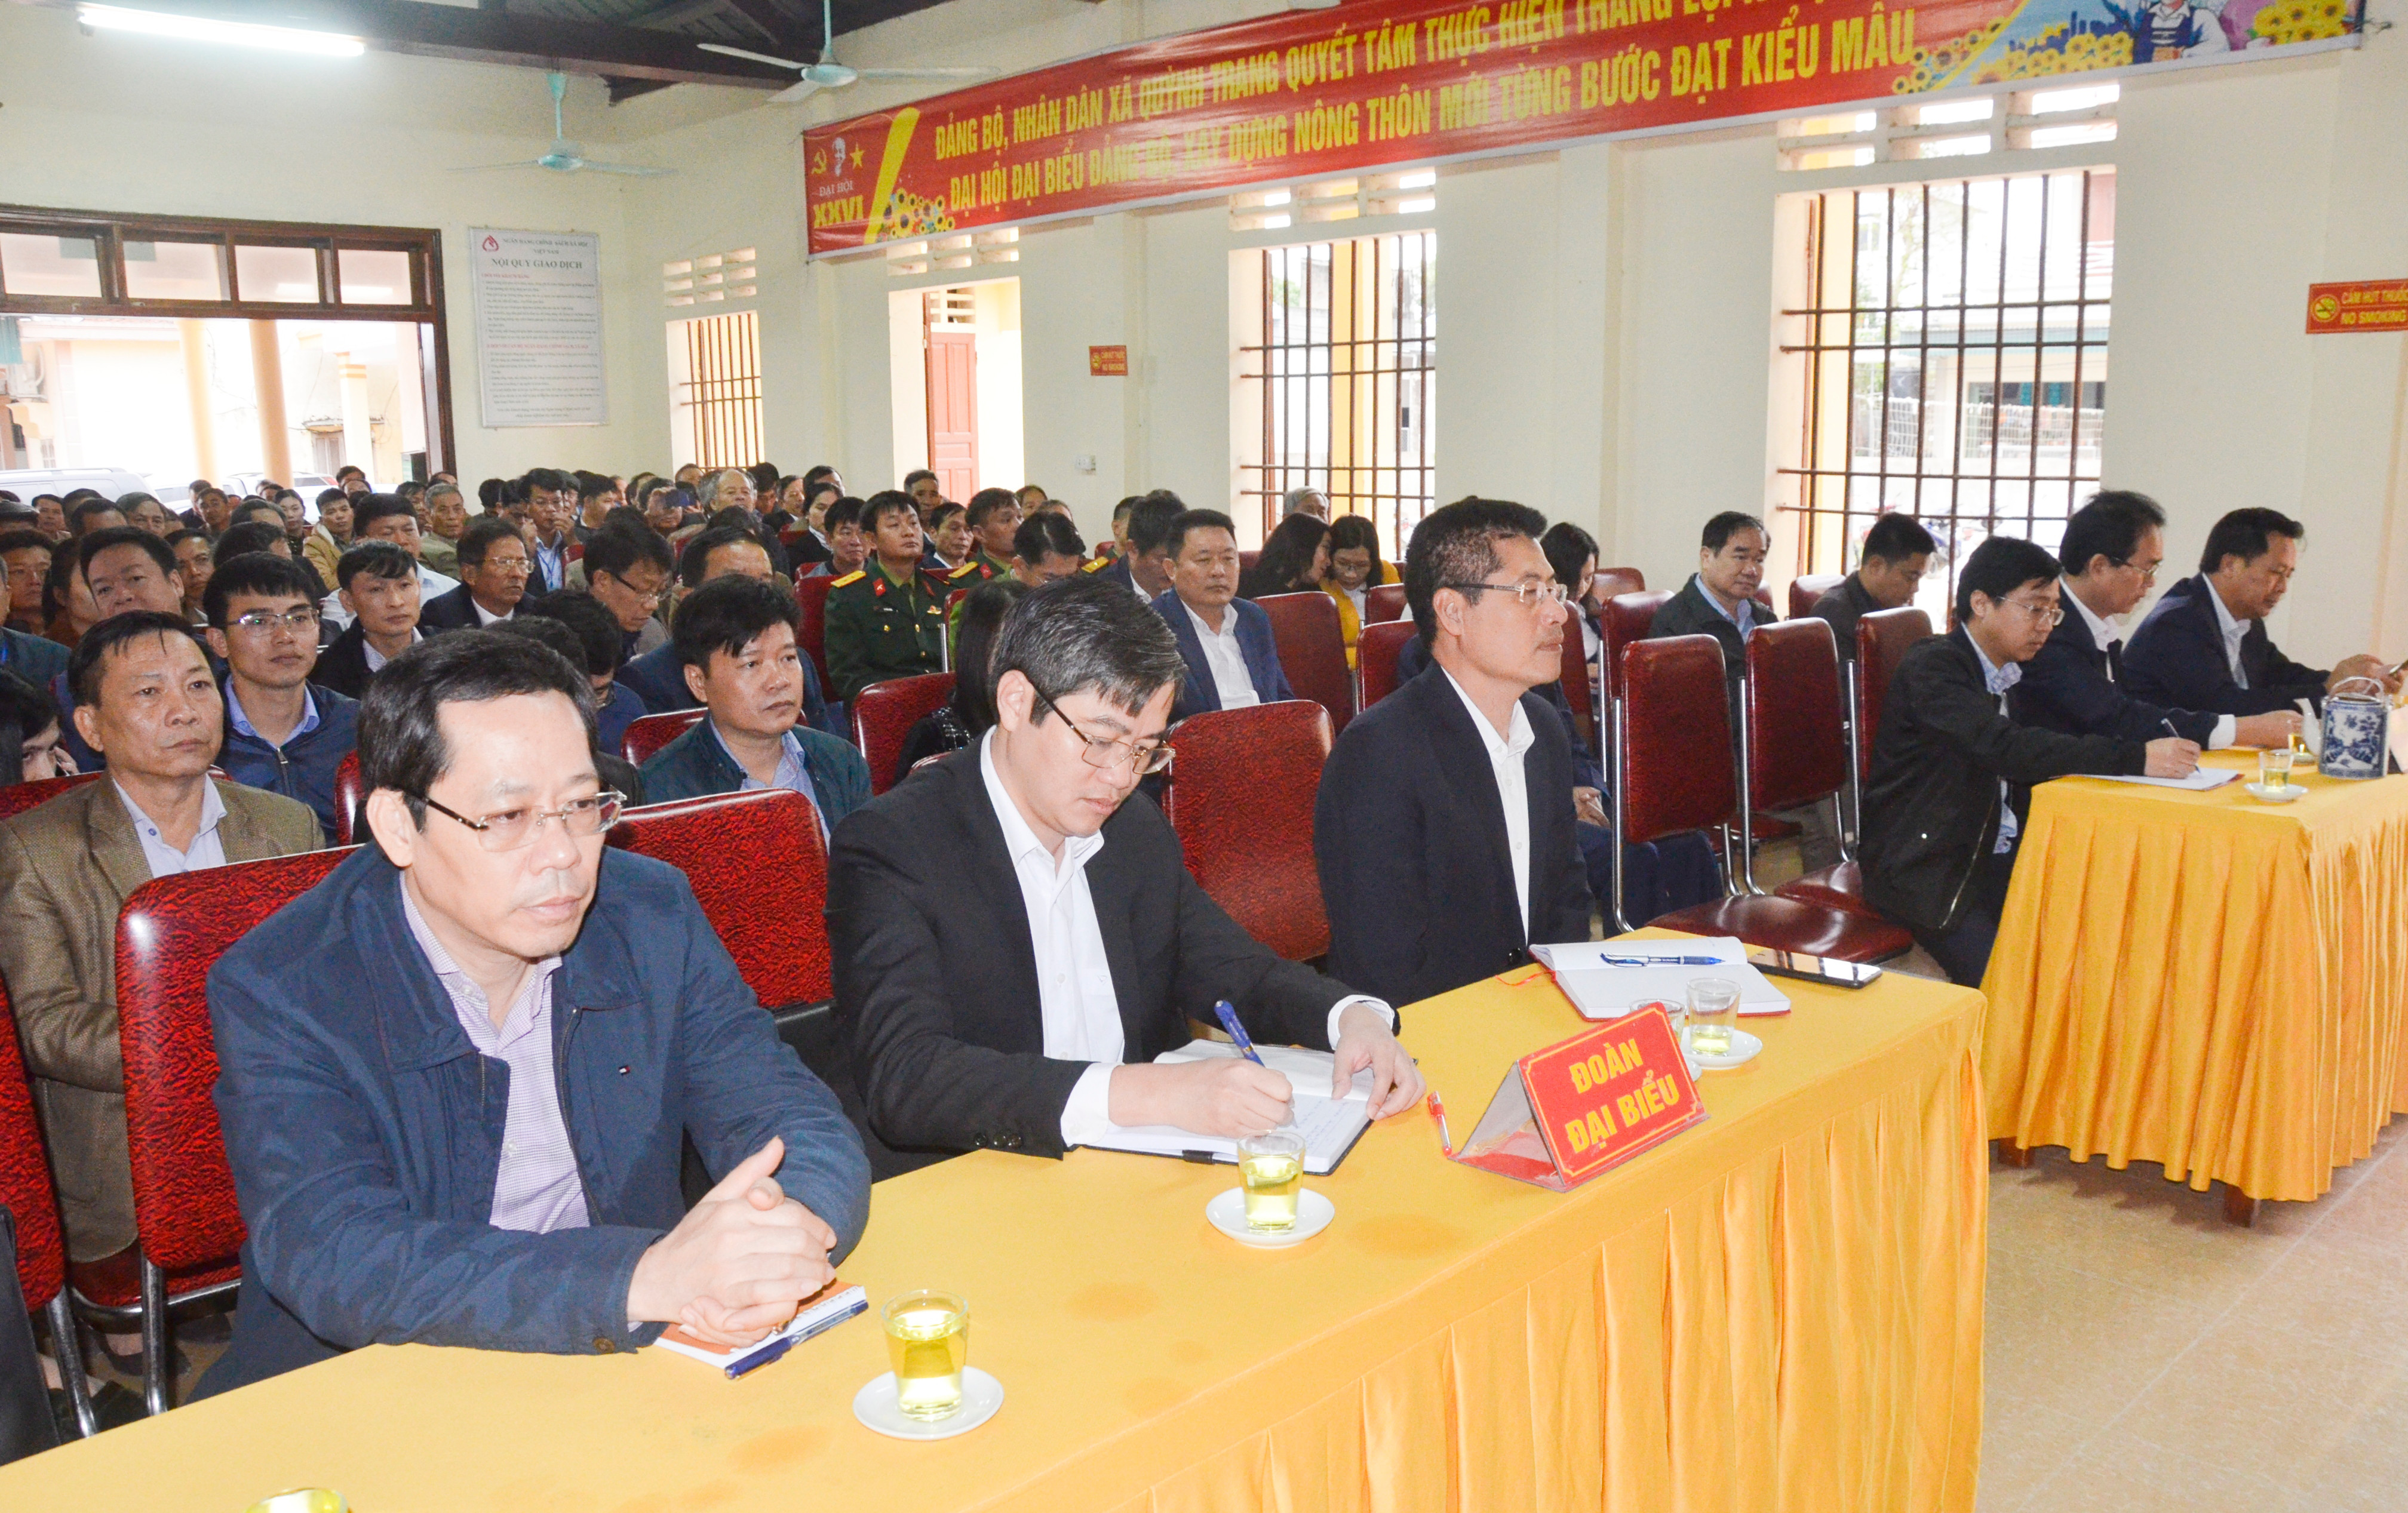 Các đại biểu cử tri thị xã Hoàng Mai tham dự hội nghị tiếp xúc cử tri. Ảnh: Thanh Lê